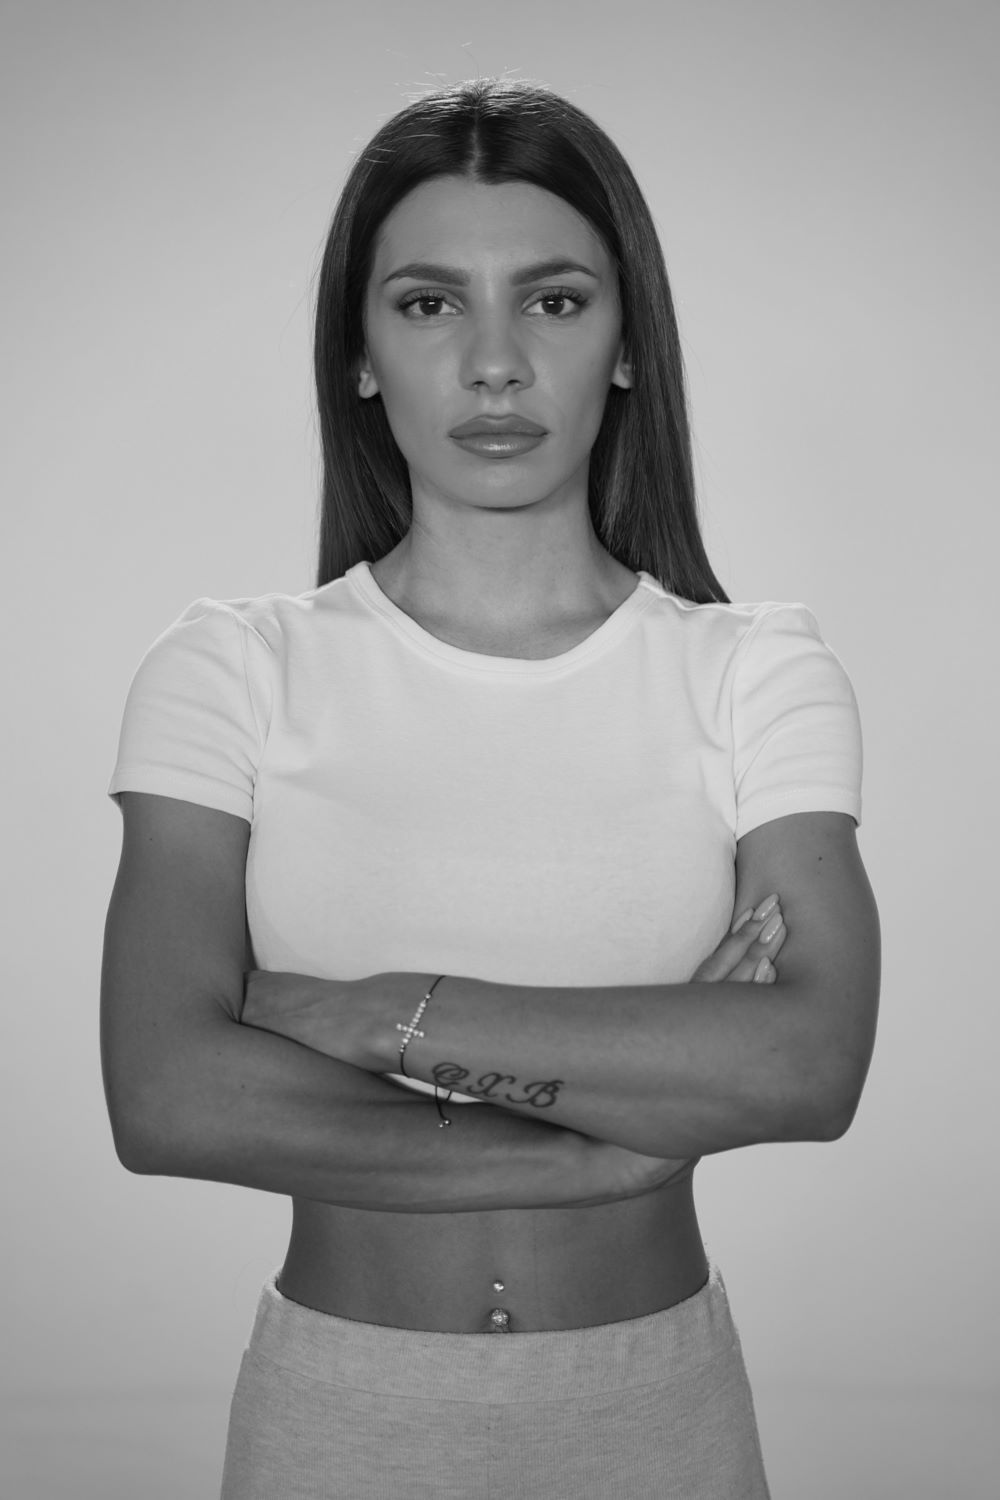 Μαριαλένα Ρουμελιώτη, 25 ετών, Γυμνάστρια (Μαχητές)